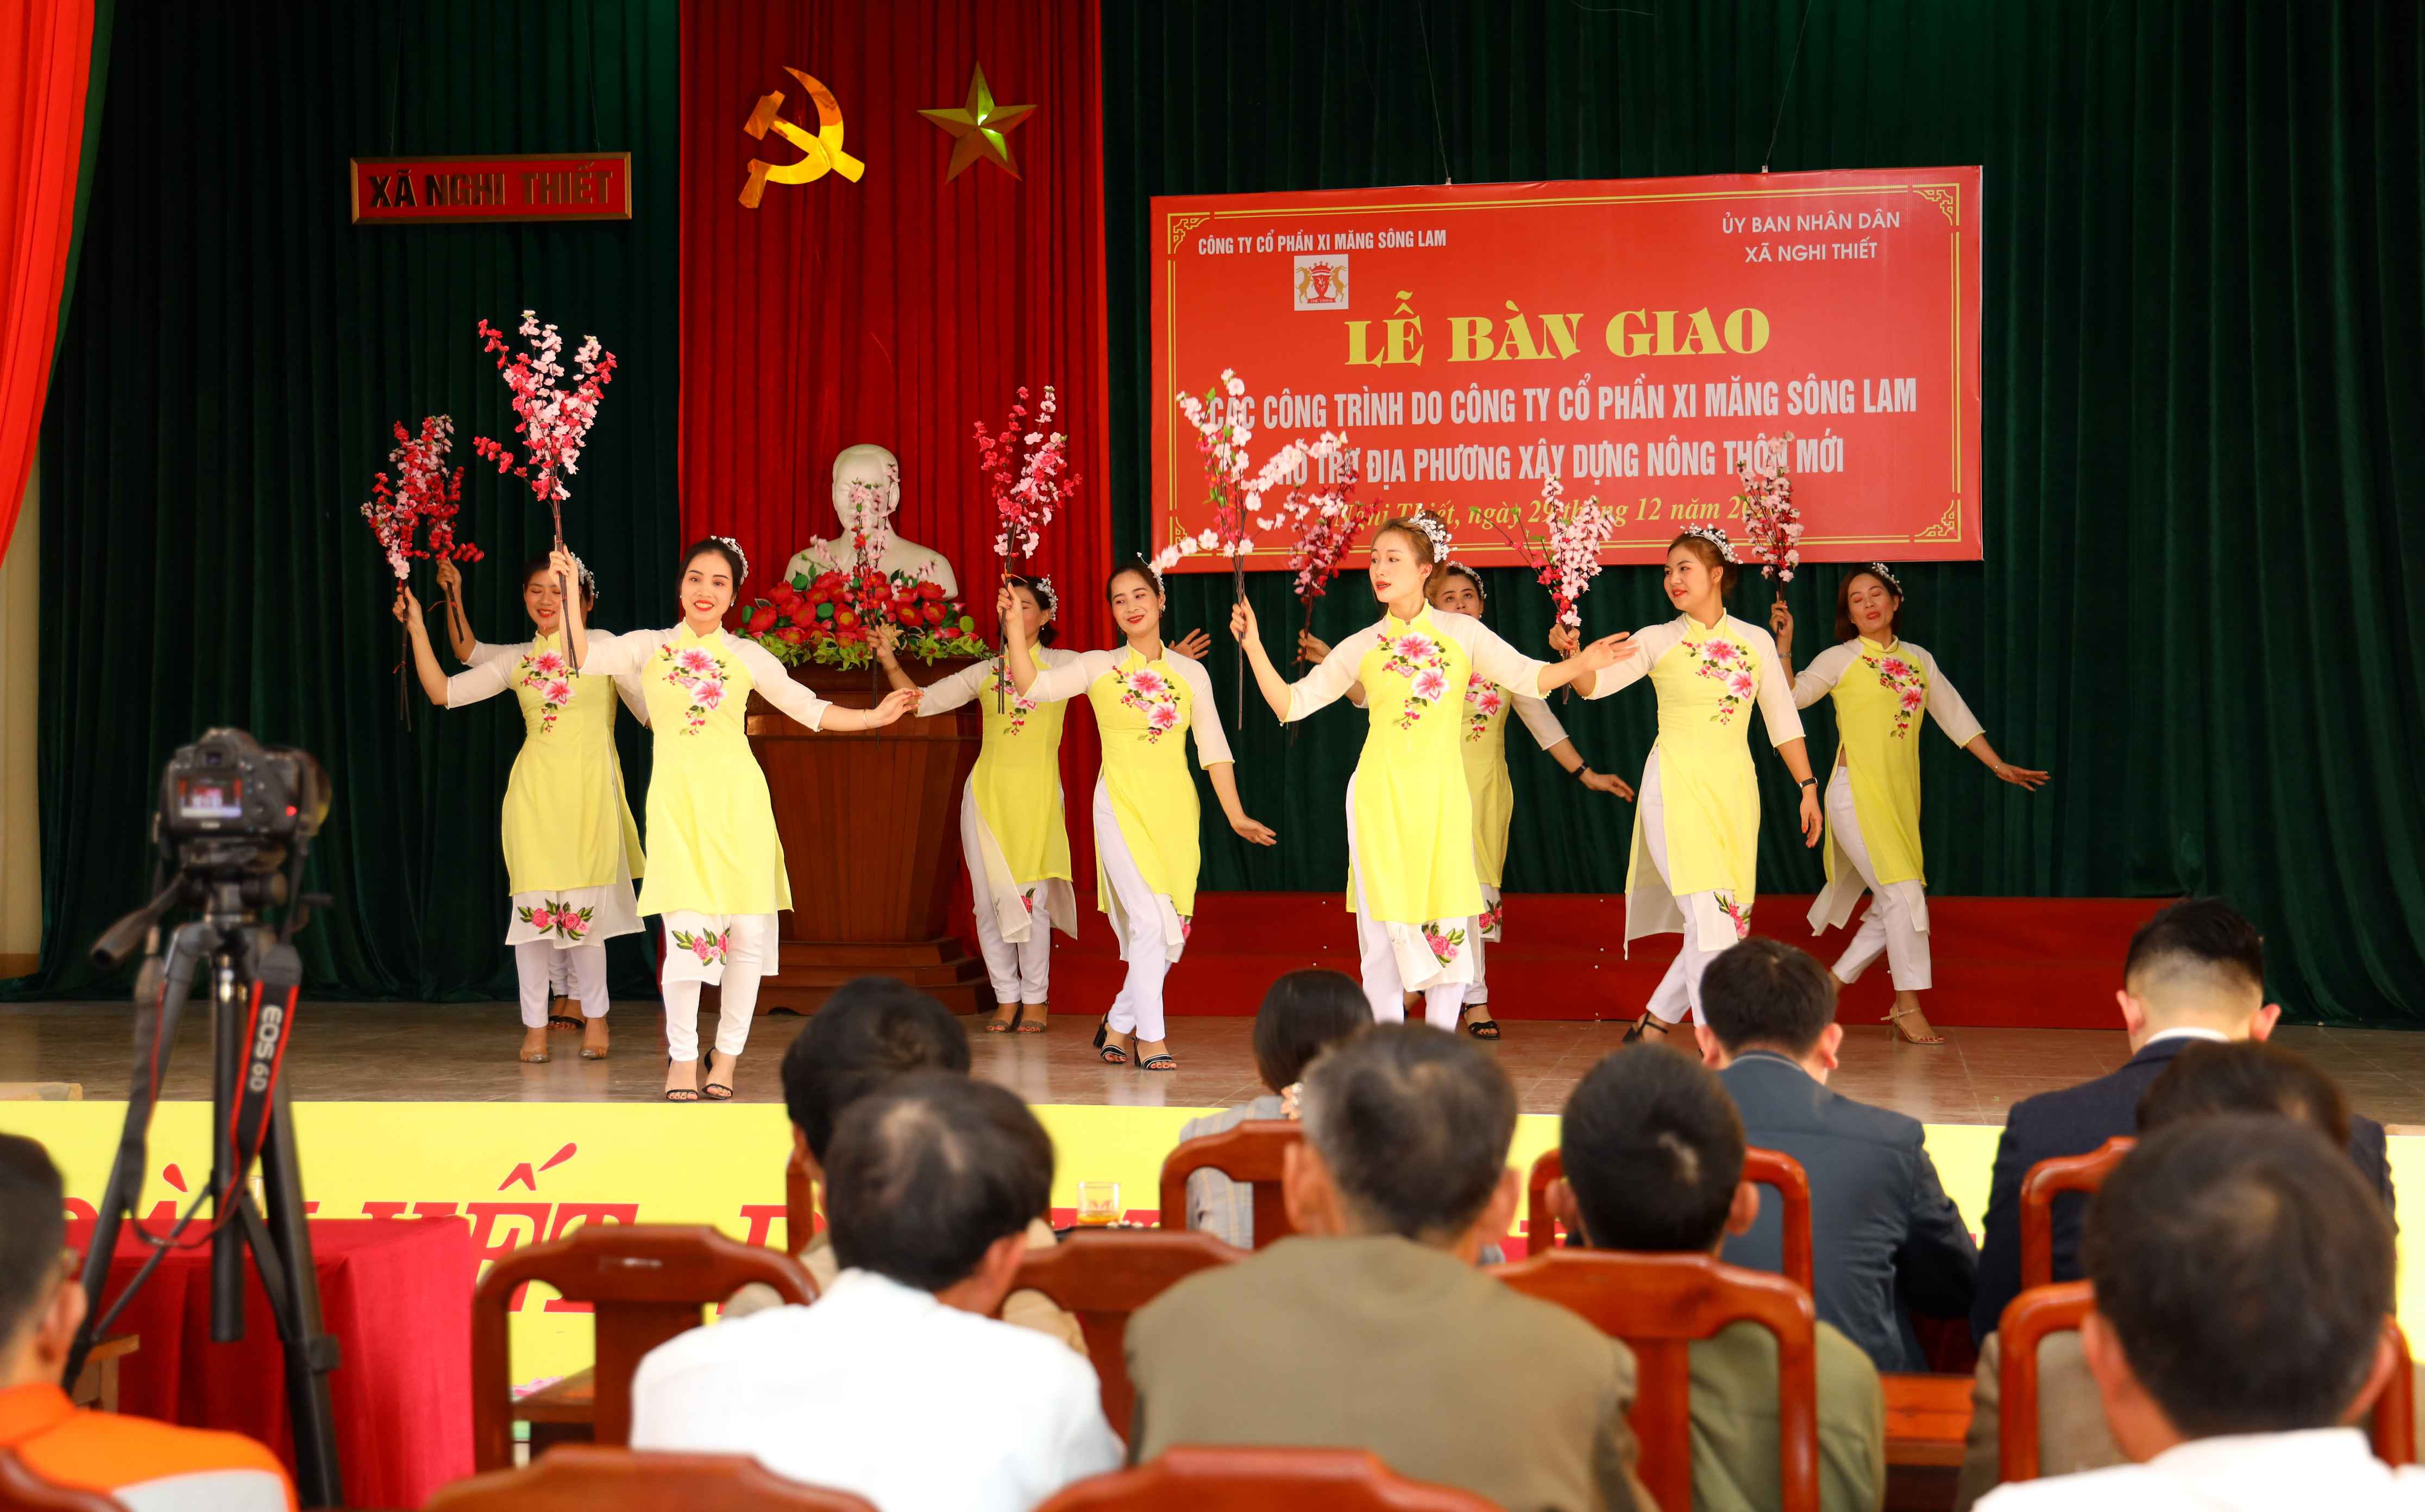 Ngày 29/12, Công ty CP Xi măng Sông Lam tổ chức lễ bàn giao các công trình hỗ trợ xã Nghi Thiết (Nghi Lộc) xây dựng nông thôn mới. Ảnh: Chương trình văn nghệ của cán bộ xã Nghi Thiết chào mừng sự kiện. Ảnh Nguyên Sơn